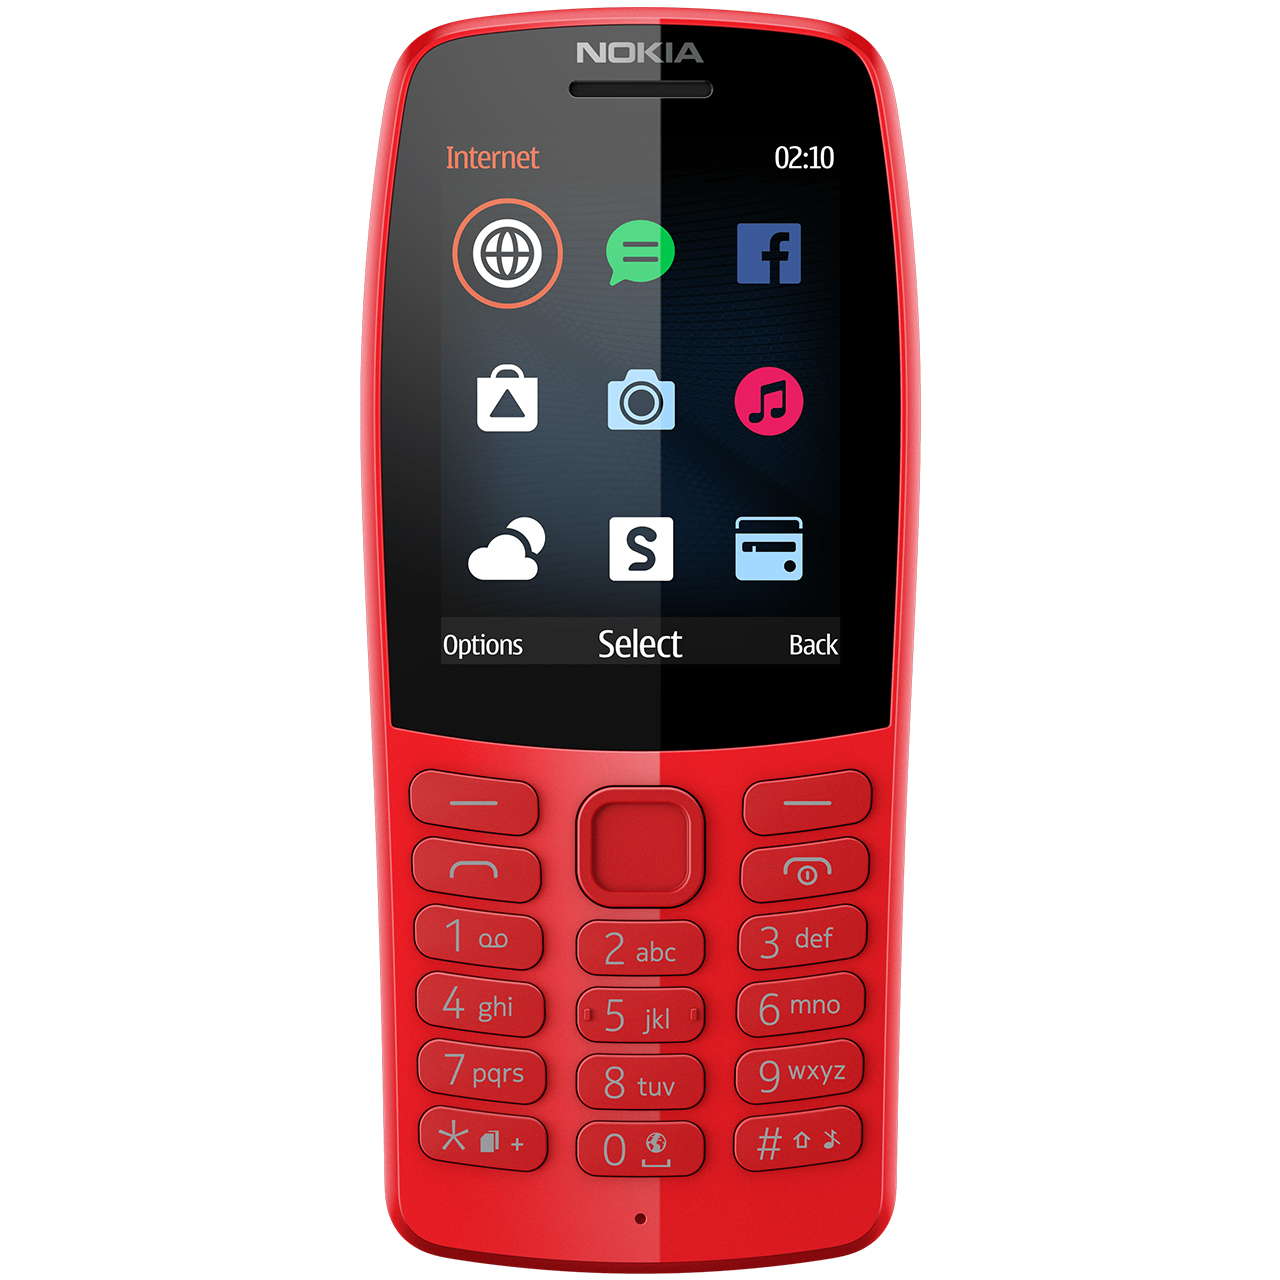 گوشی موبایل نوکیا مدل 210 دو سیم کارت - با برچسب قیمت مصرف کننده